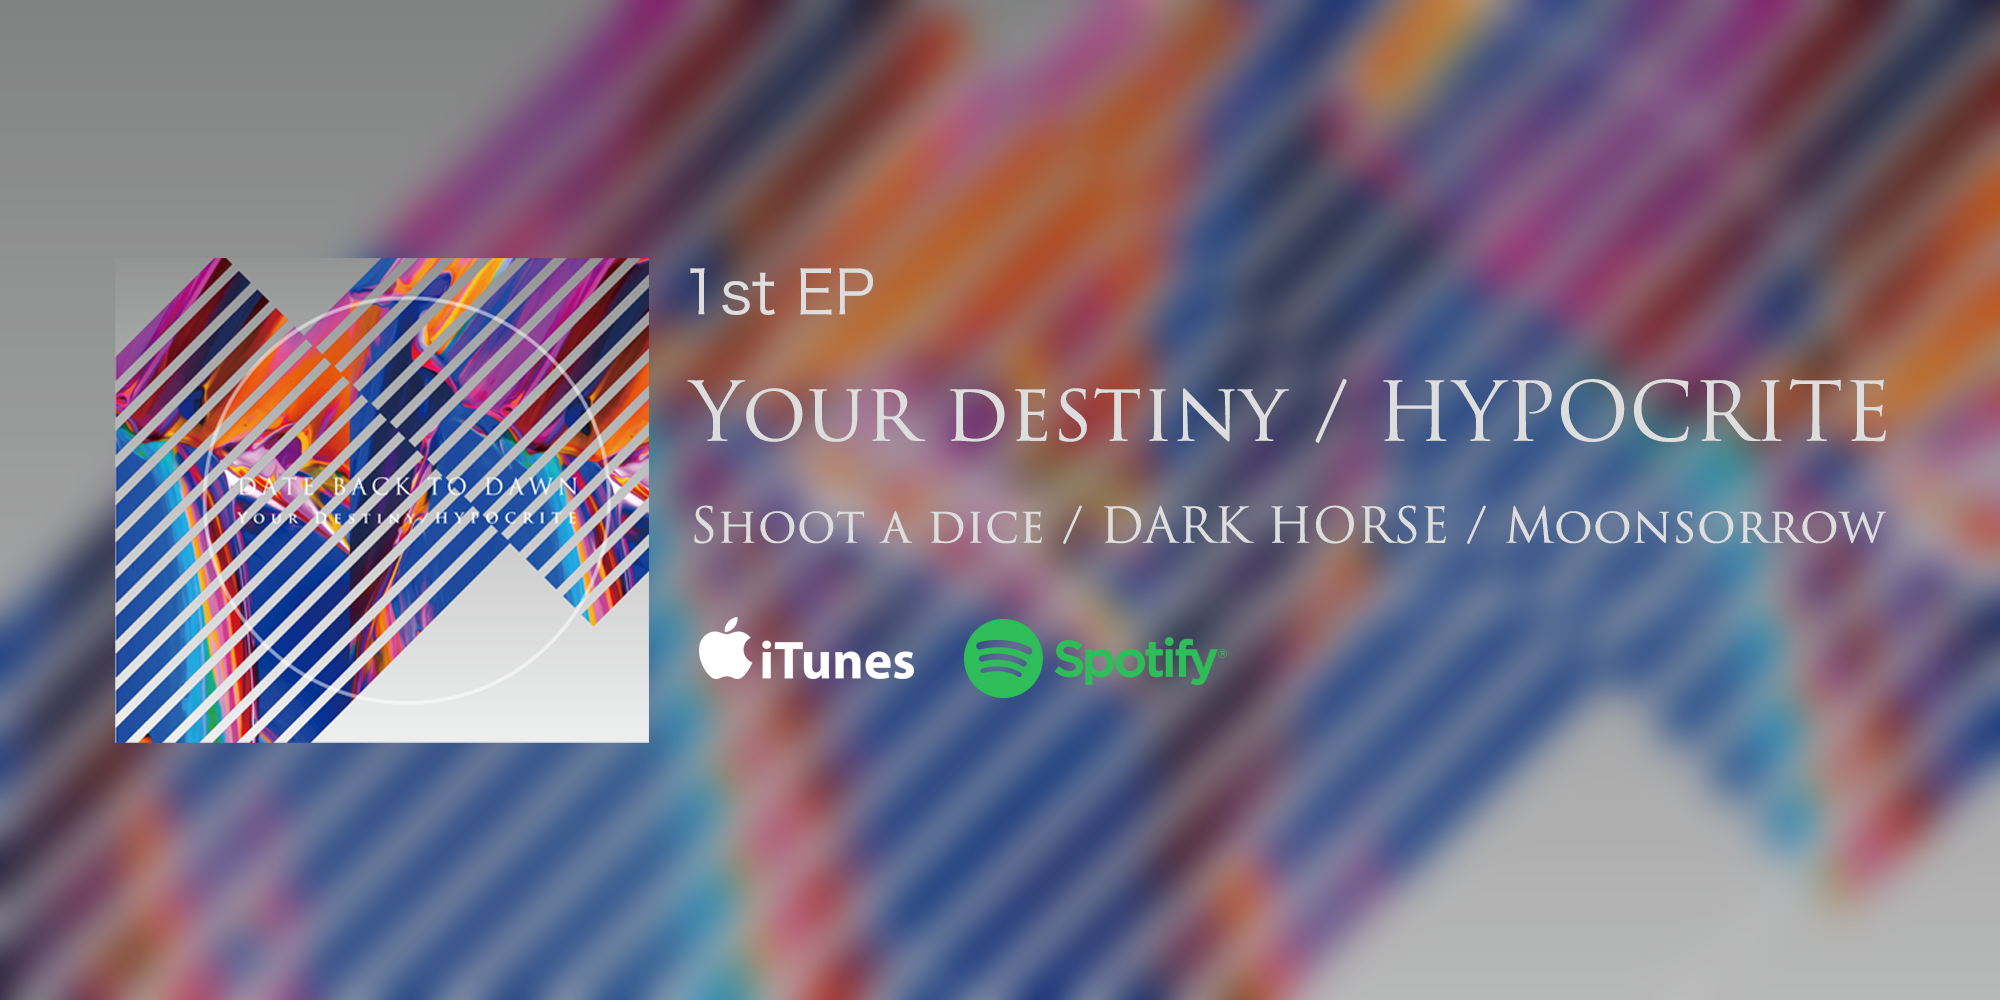 Your destiny / HYPOCRITE